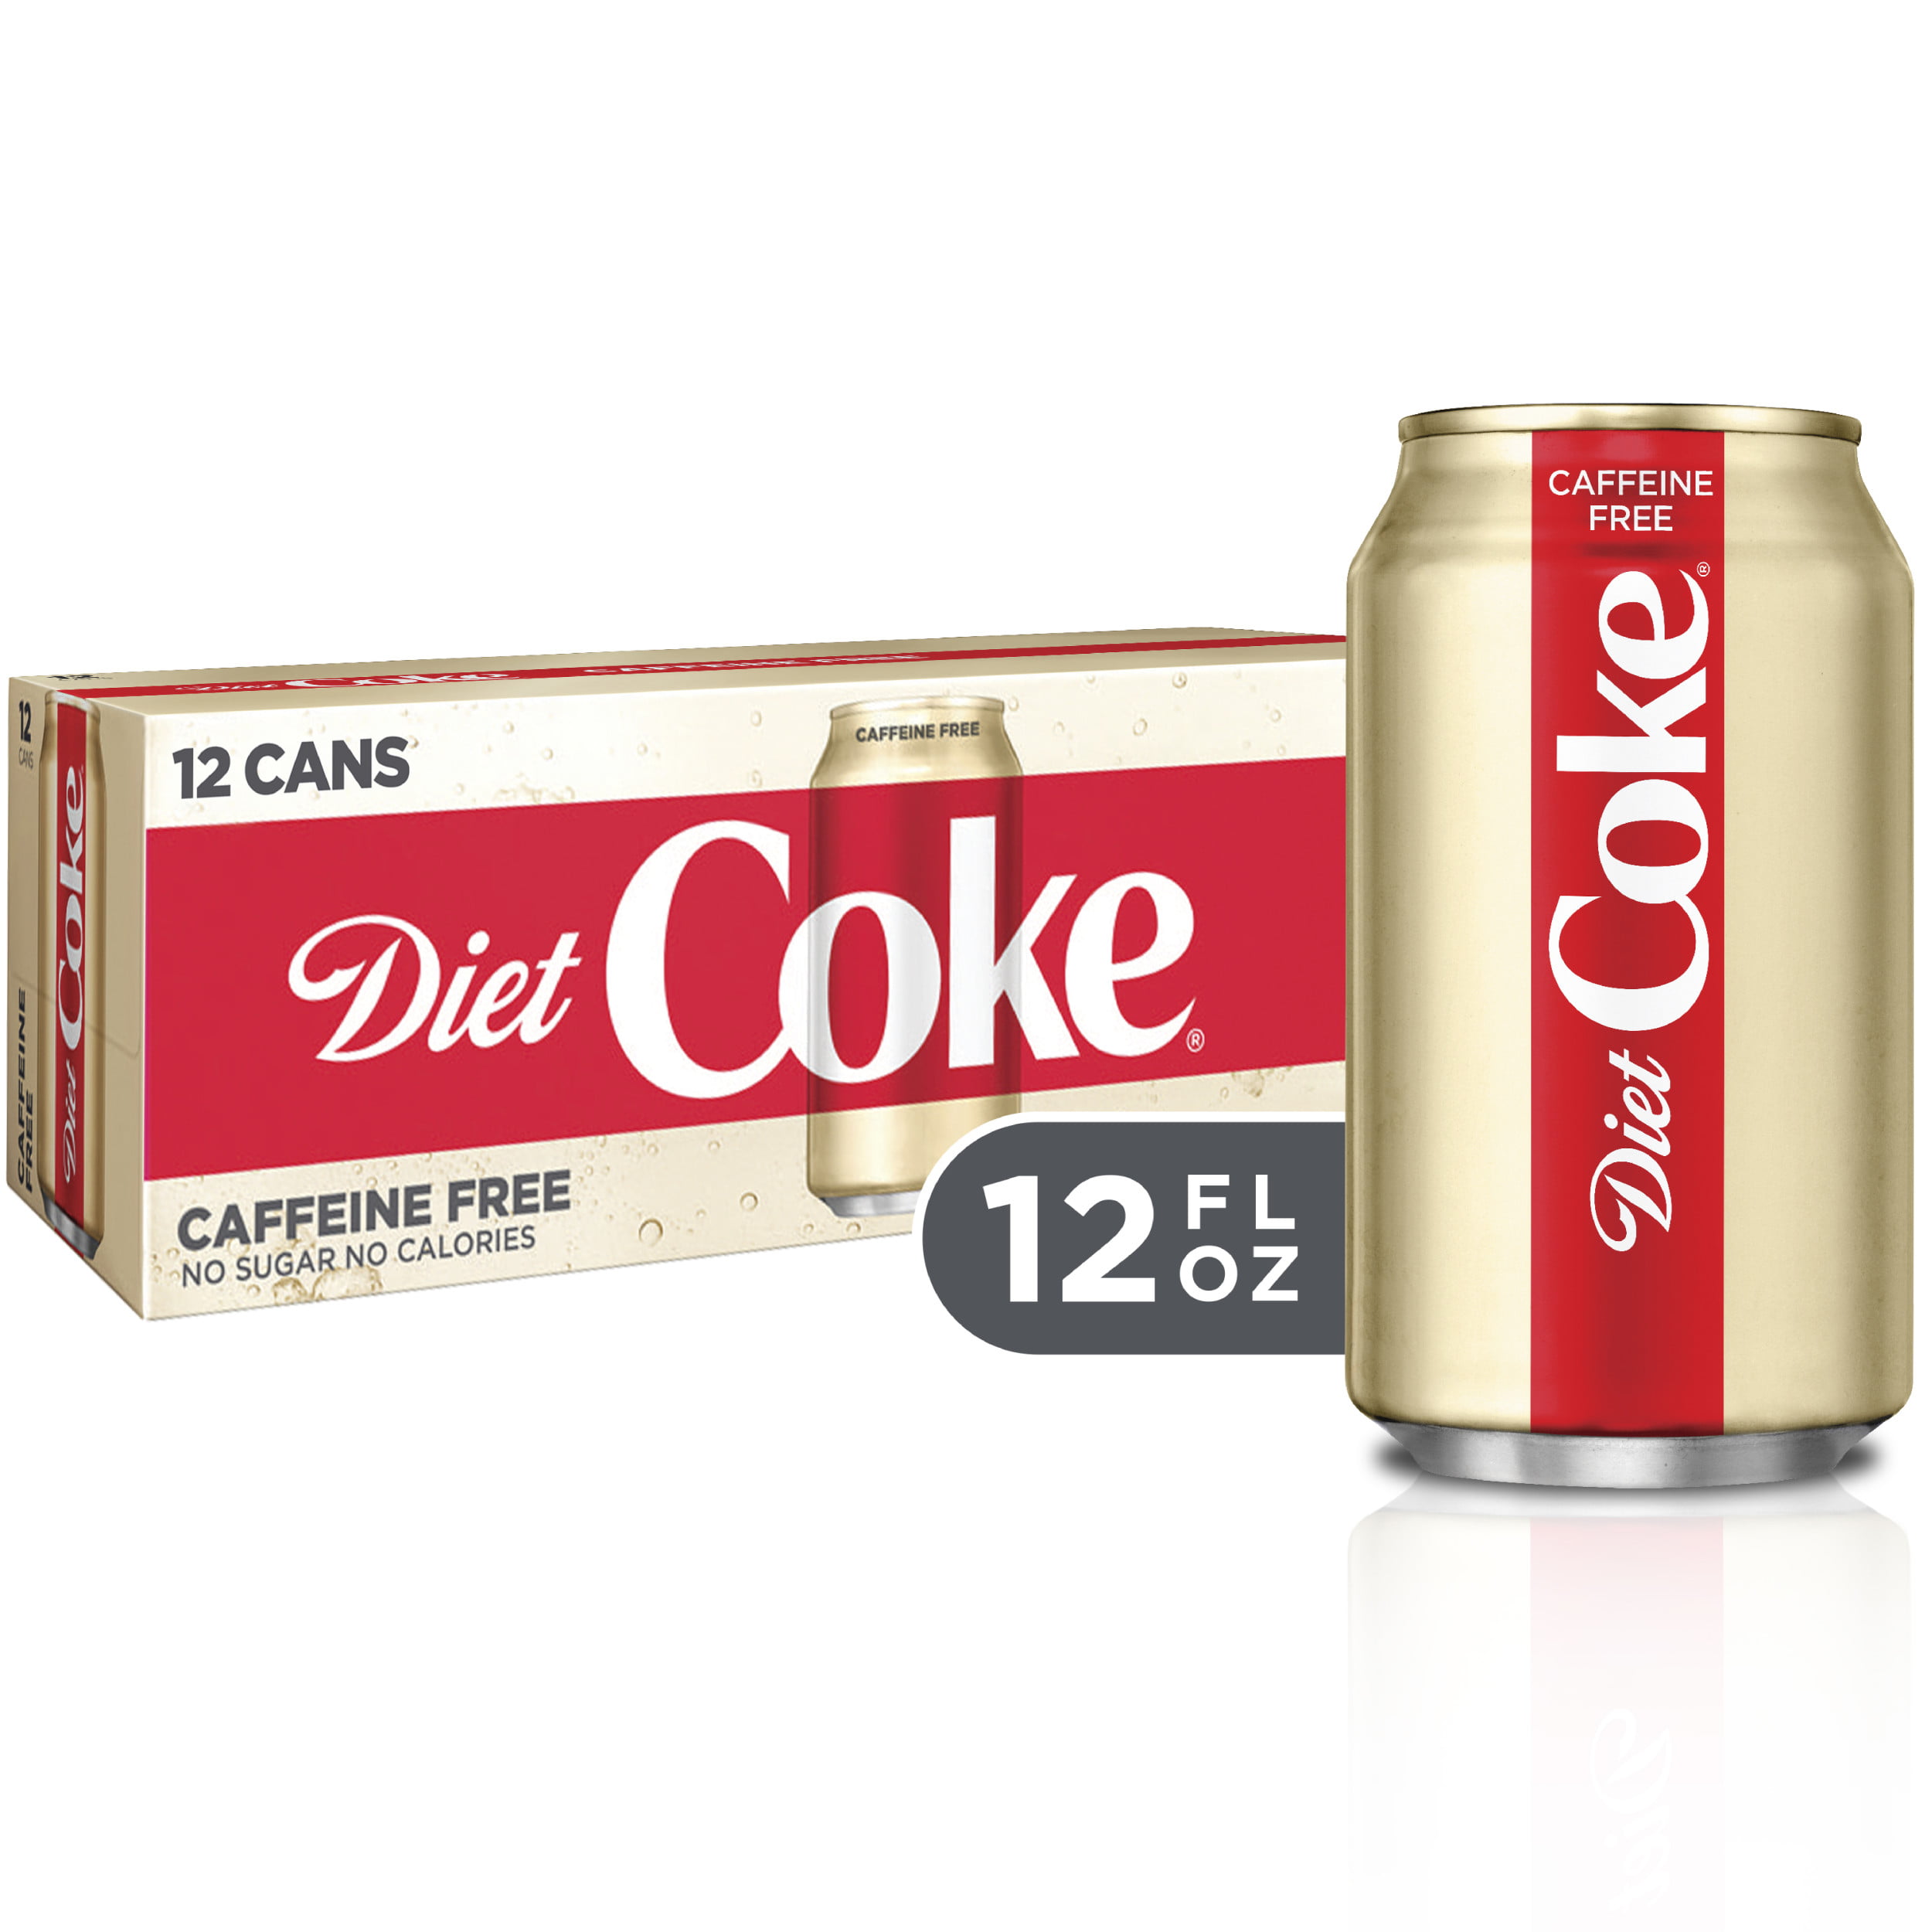 diet coke is caffeine free